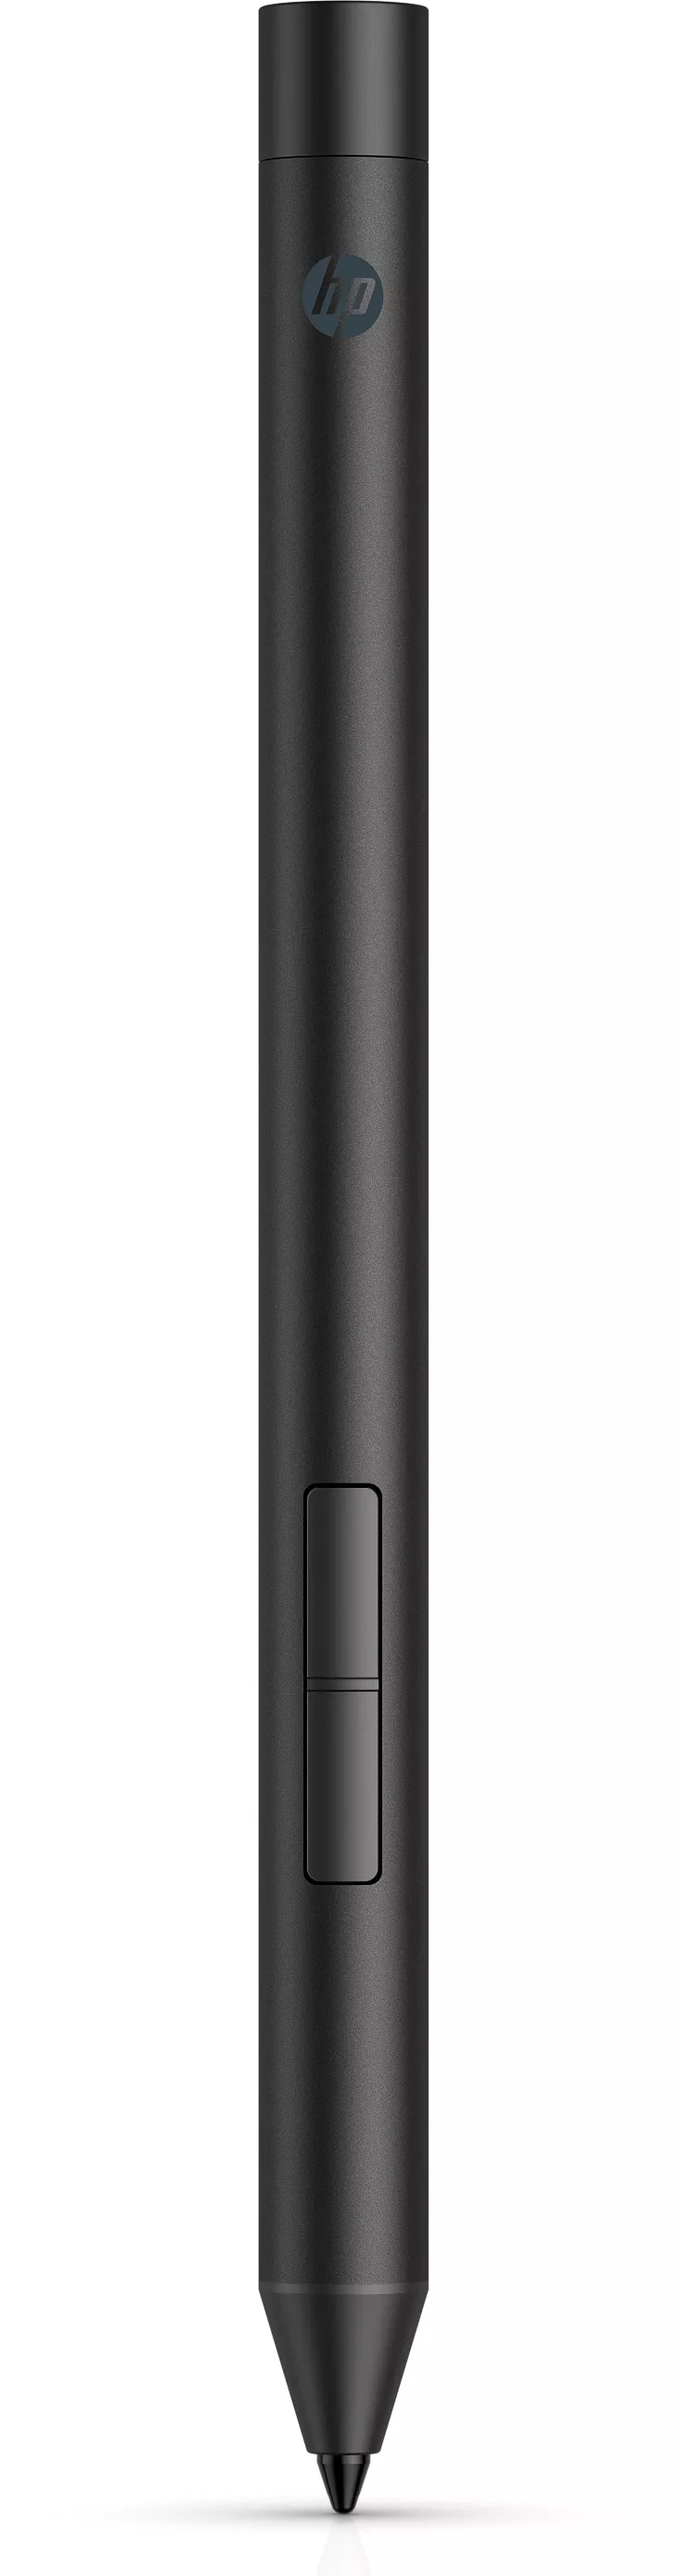 Achat Accessoires Tablette HP Pro Pen